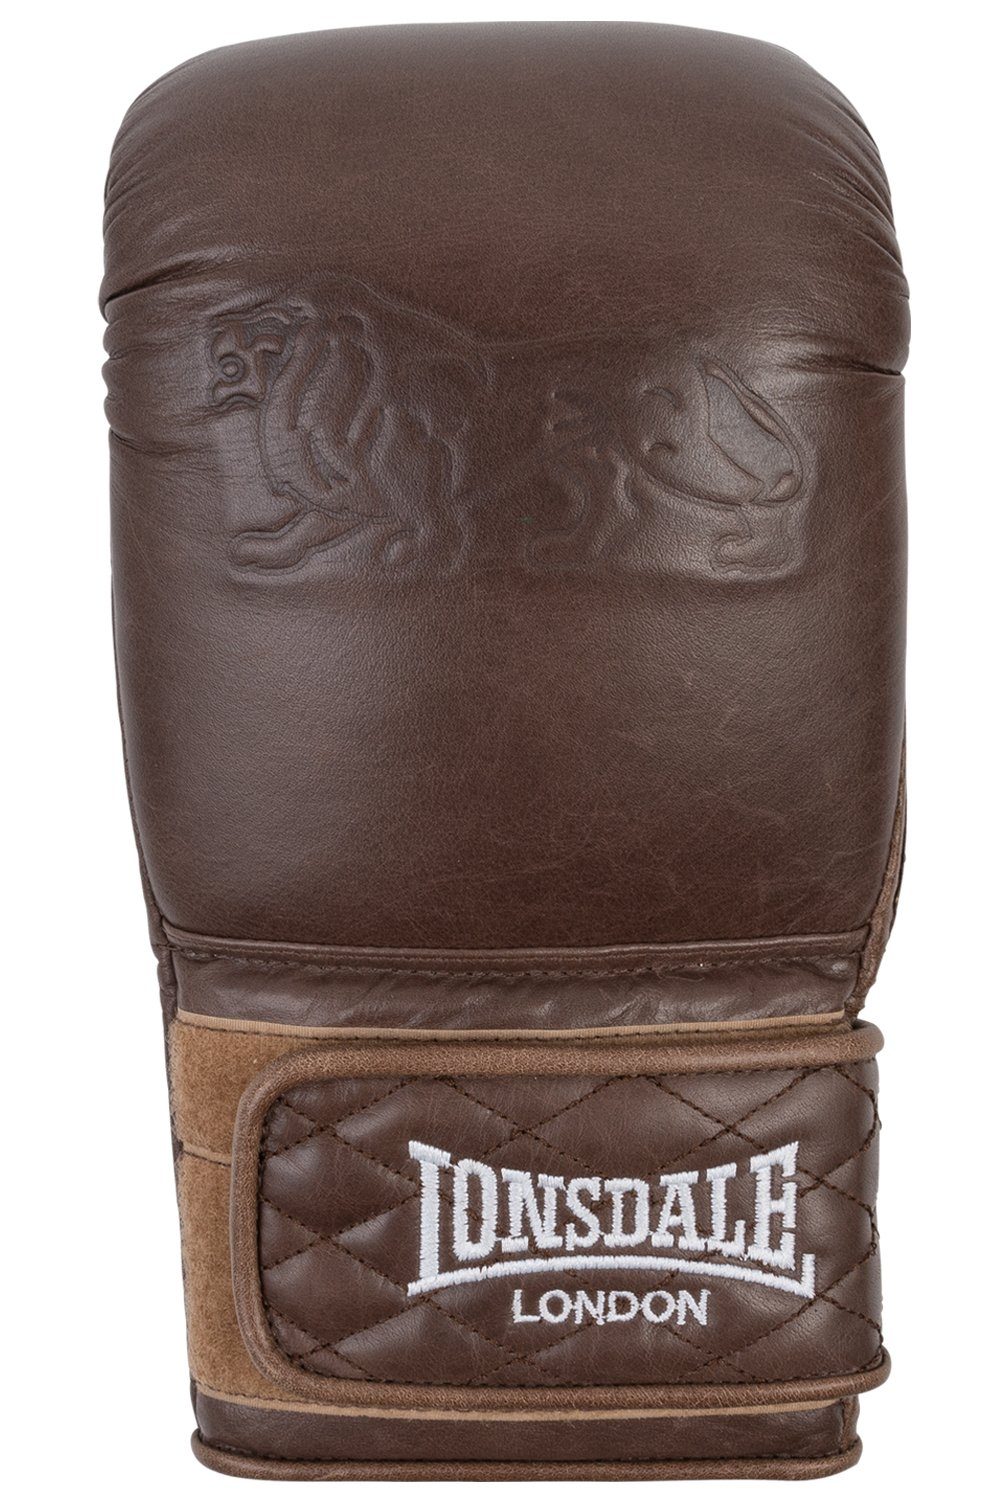 Lonsdale VINTAGE Boxhandschuhe BAG GLOVES